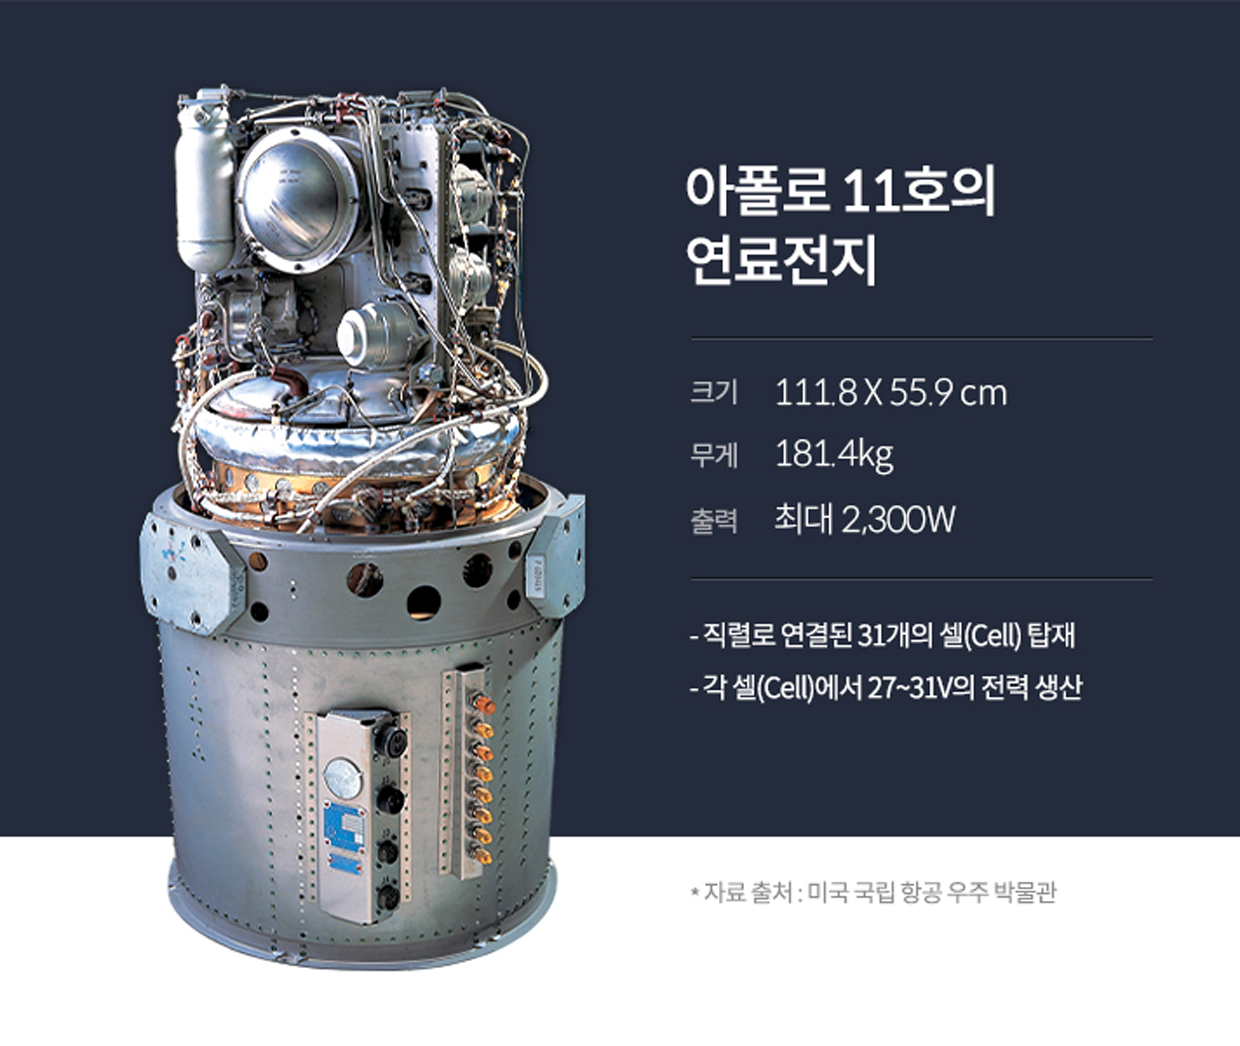 아폴로 11호의 연료전지를 설명. 크기 1118 X 55.9 cm, 무게 181.4kg, 출력 최대 2300W, 직렬로 연결된 31개의 셀Cell 탑재, 각 셀Cell에서 27부터 31V의 전력 생산